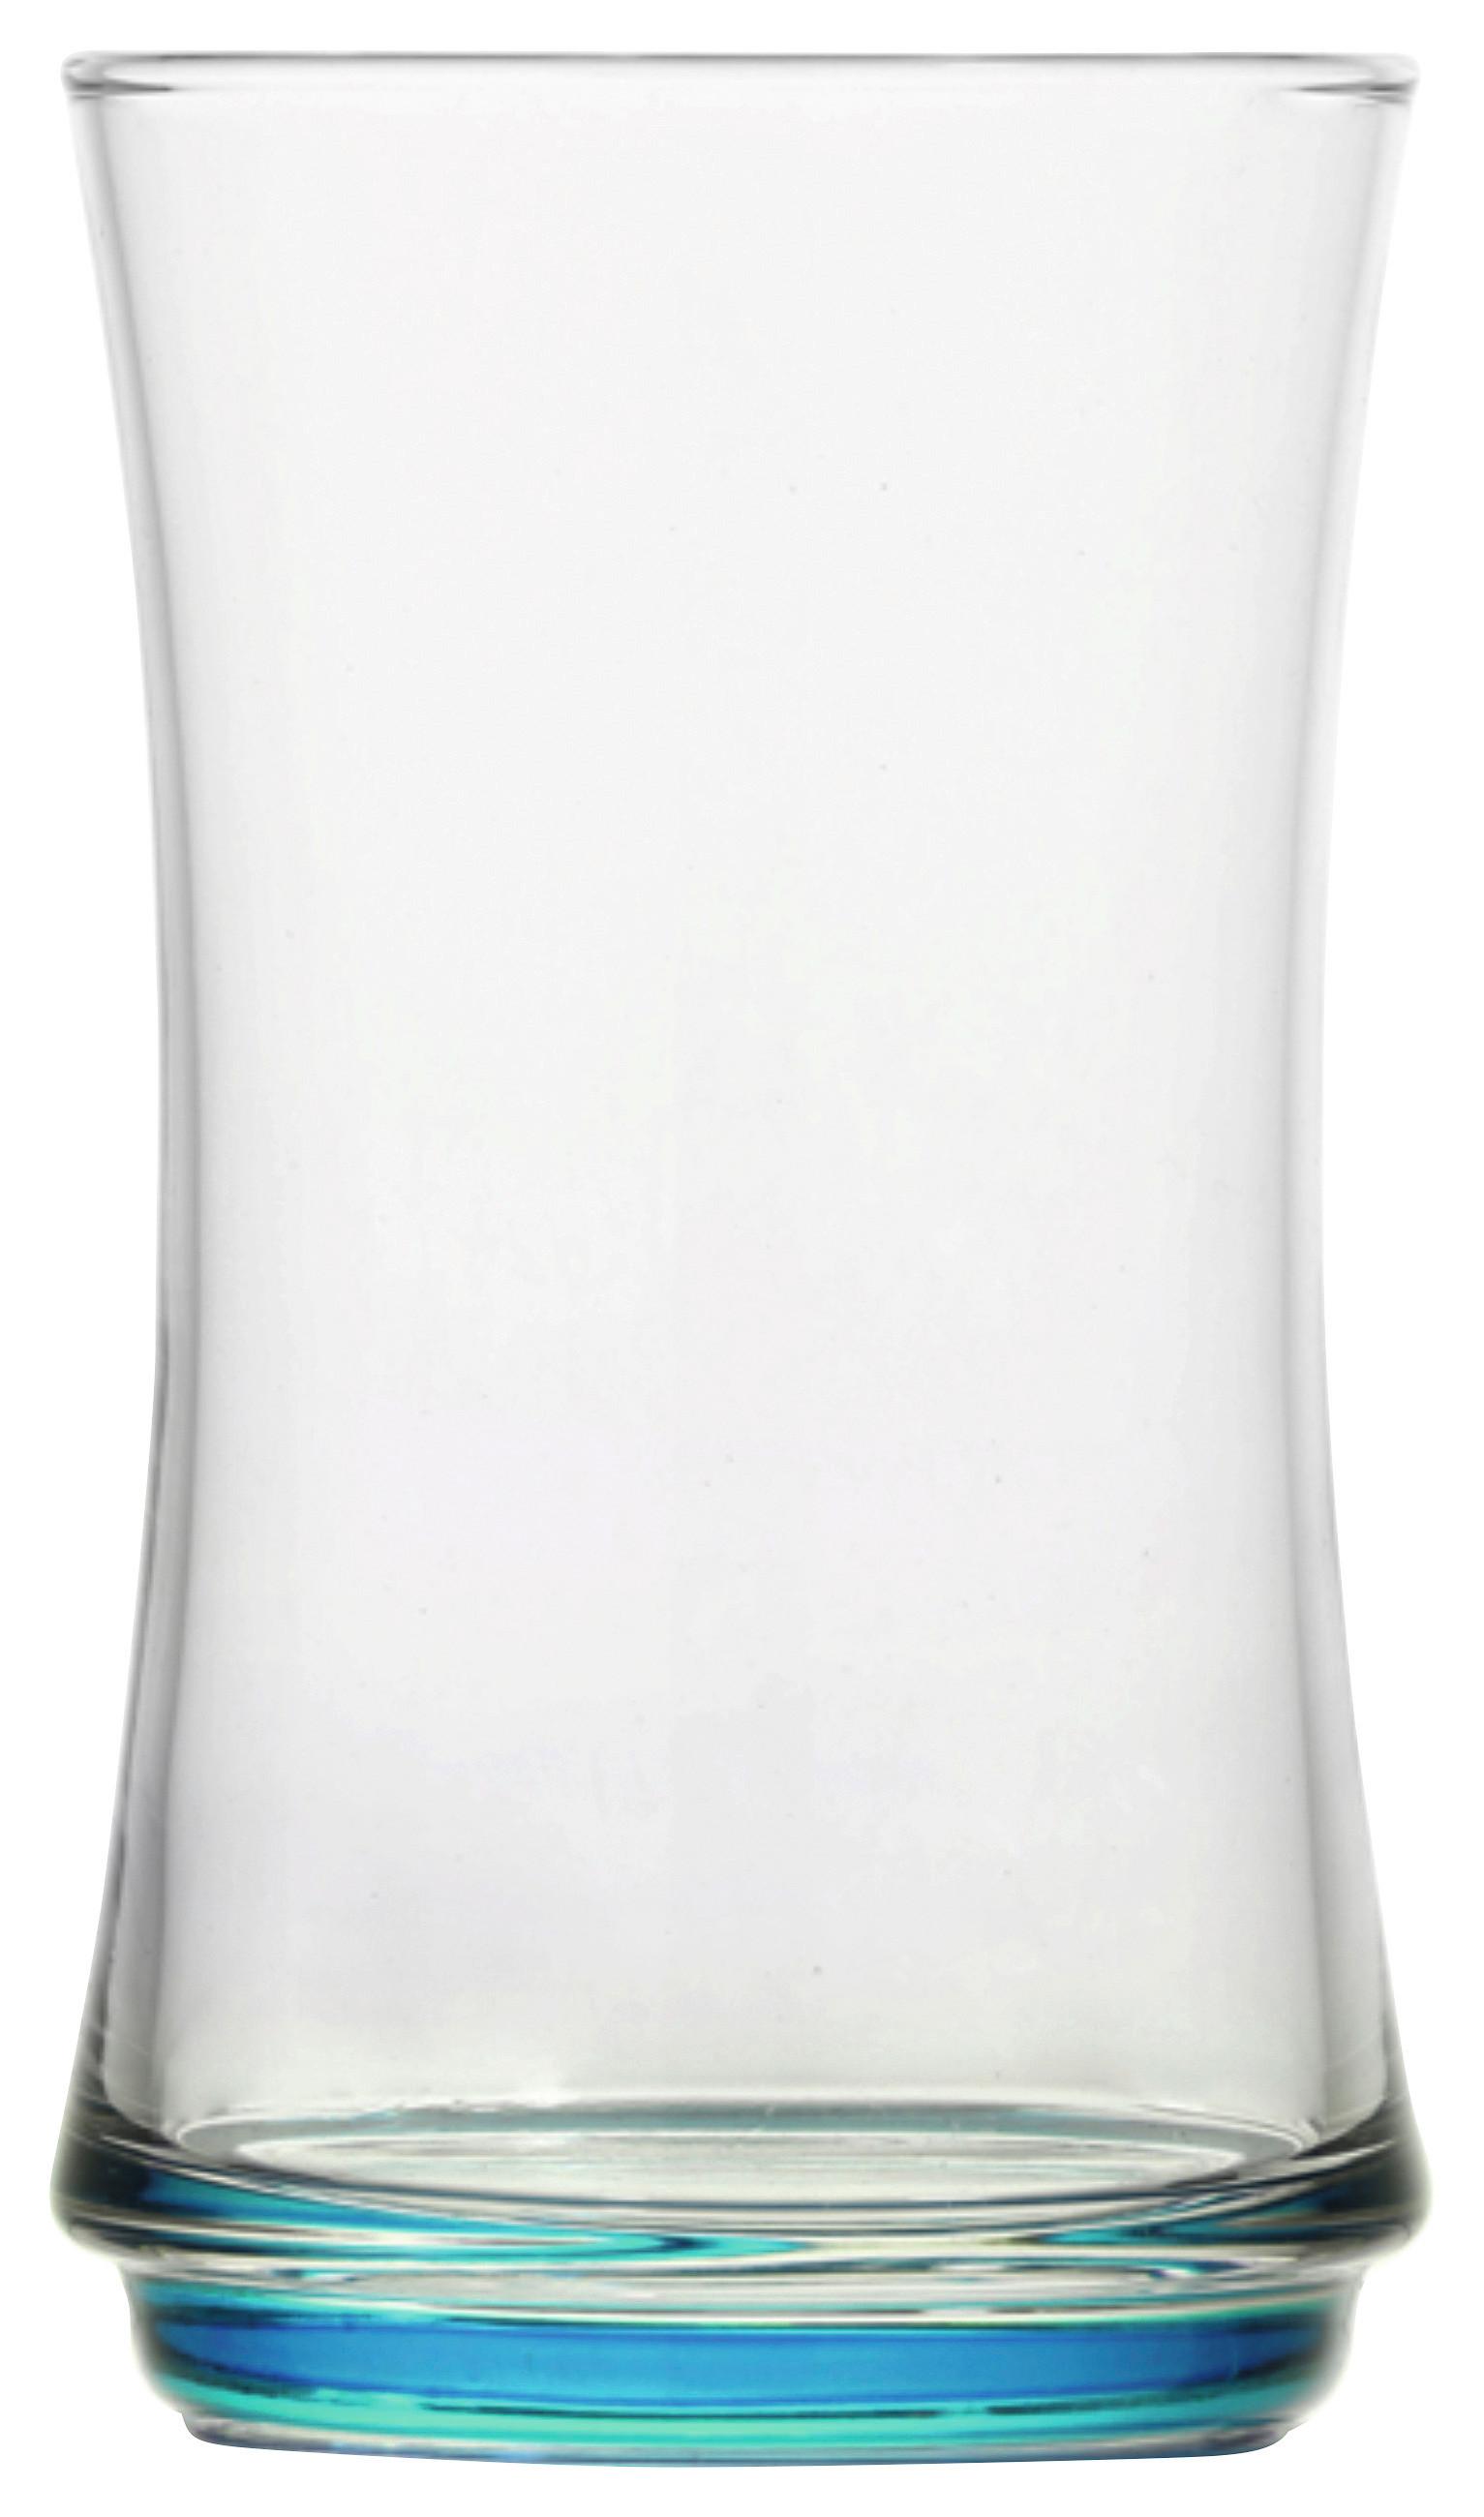 Longdrinkglas mit Farbigen Boden Edward, ca. 365 ml